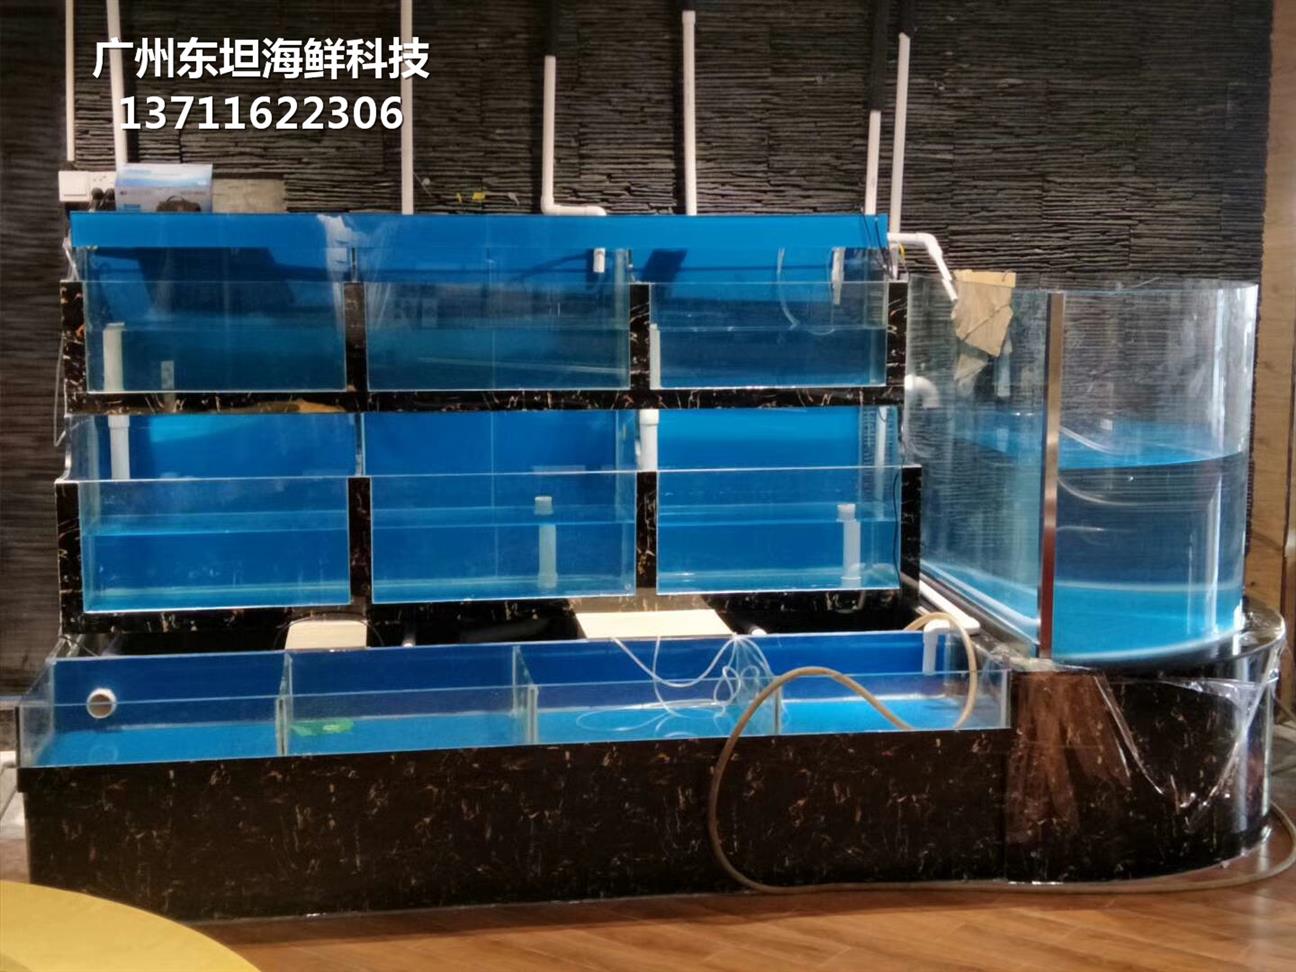 广州海珠定做海鲜市场玻璃鱼池